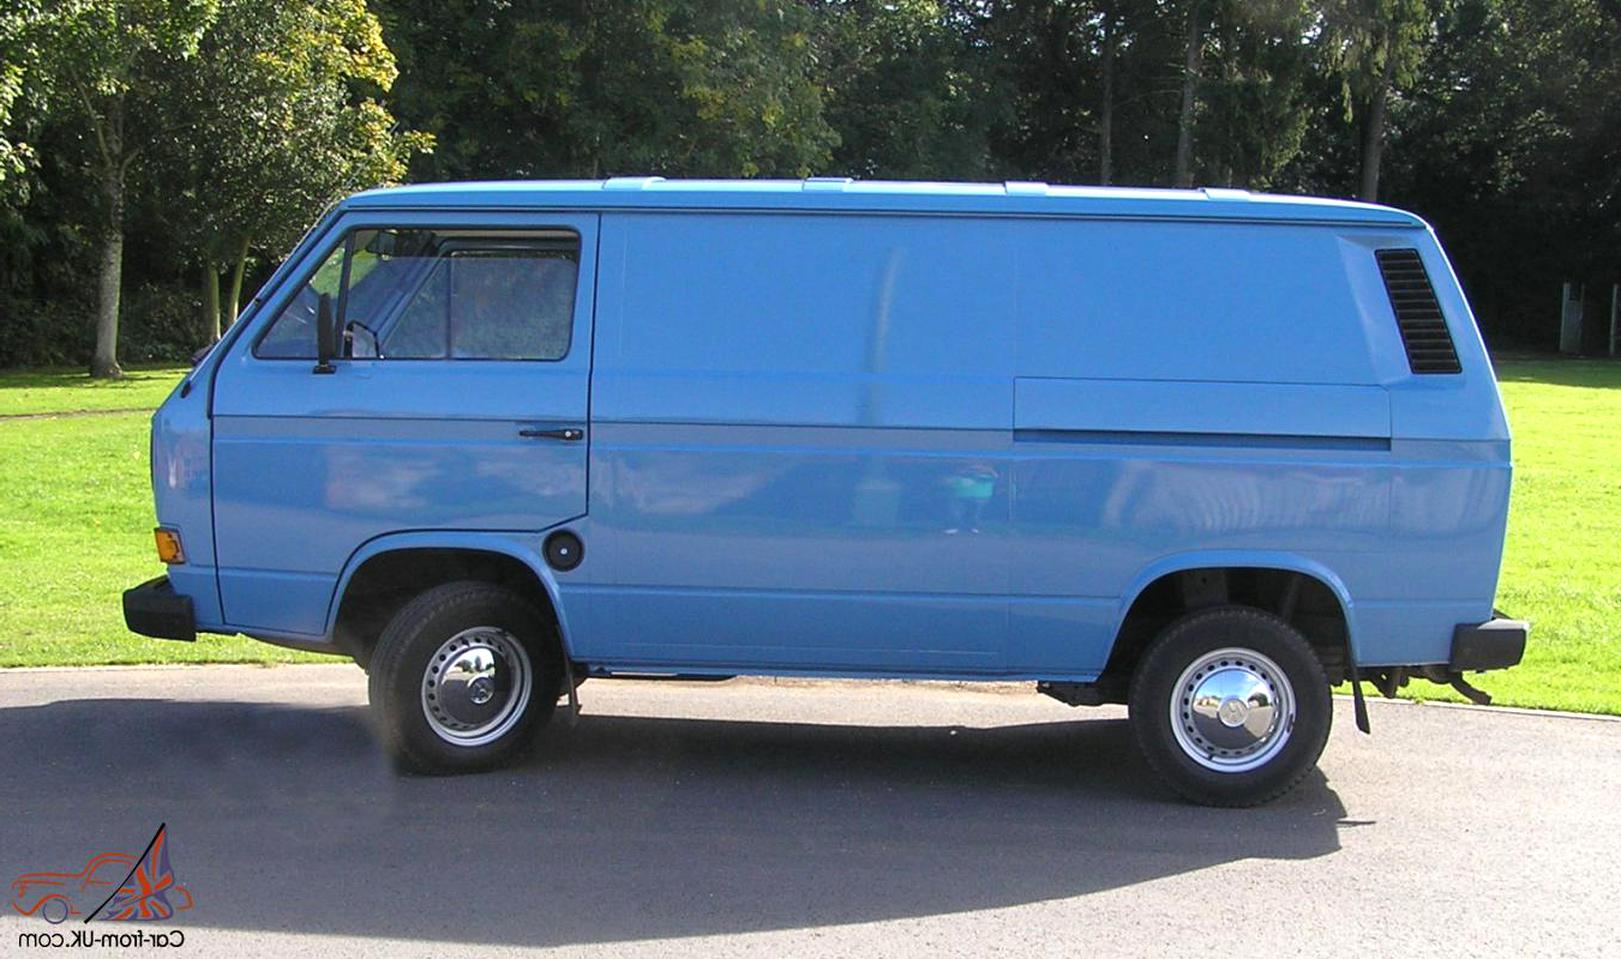 panel vans for sale uk